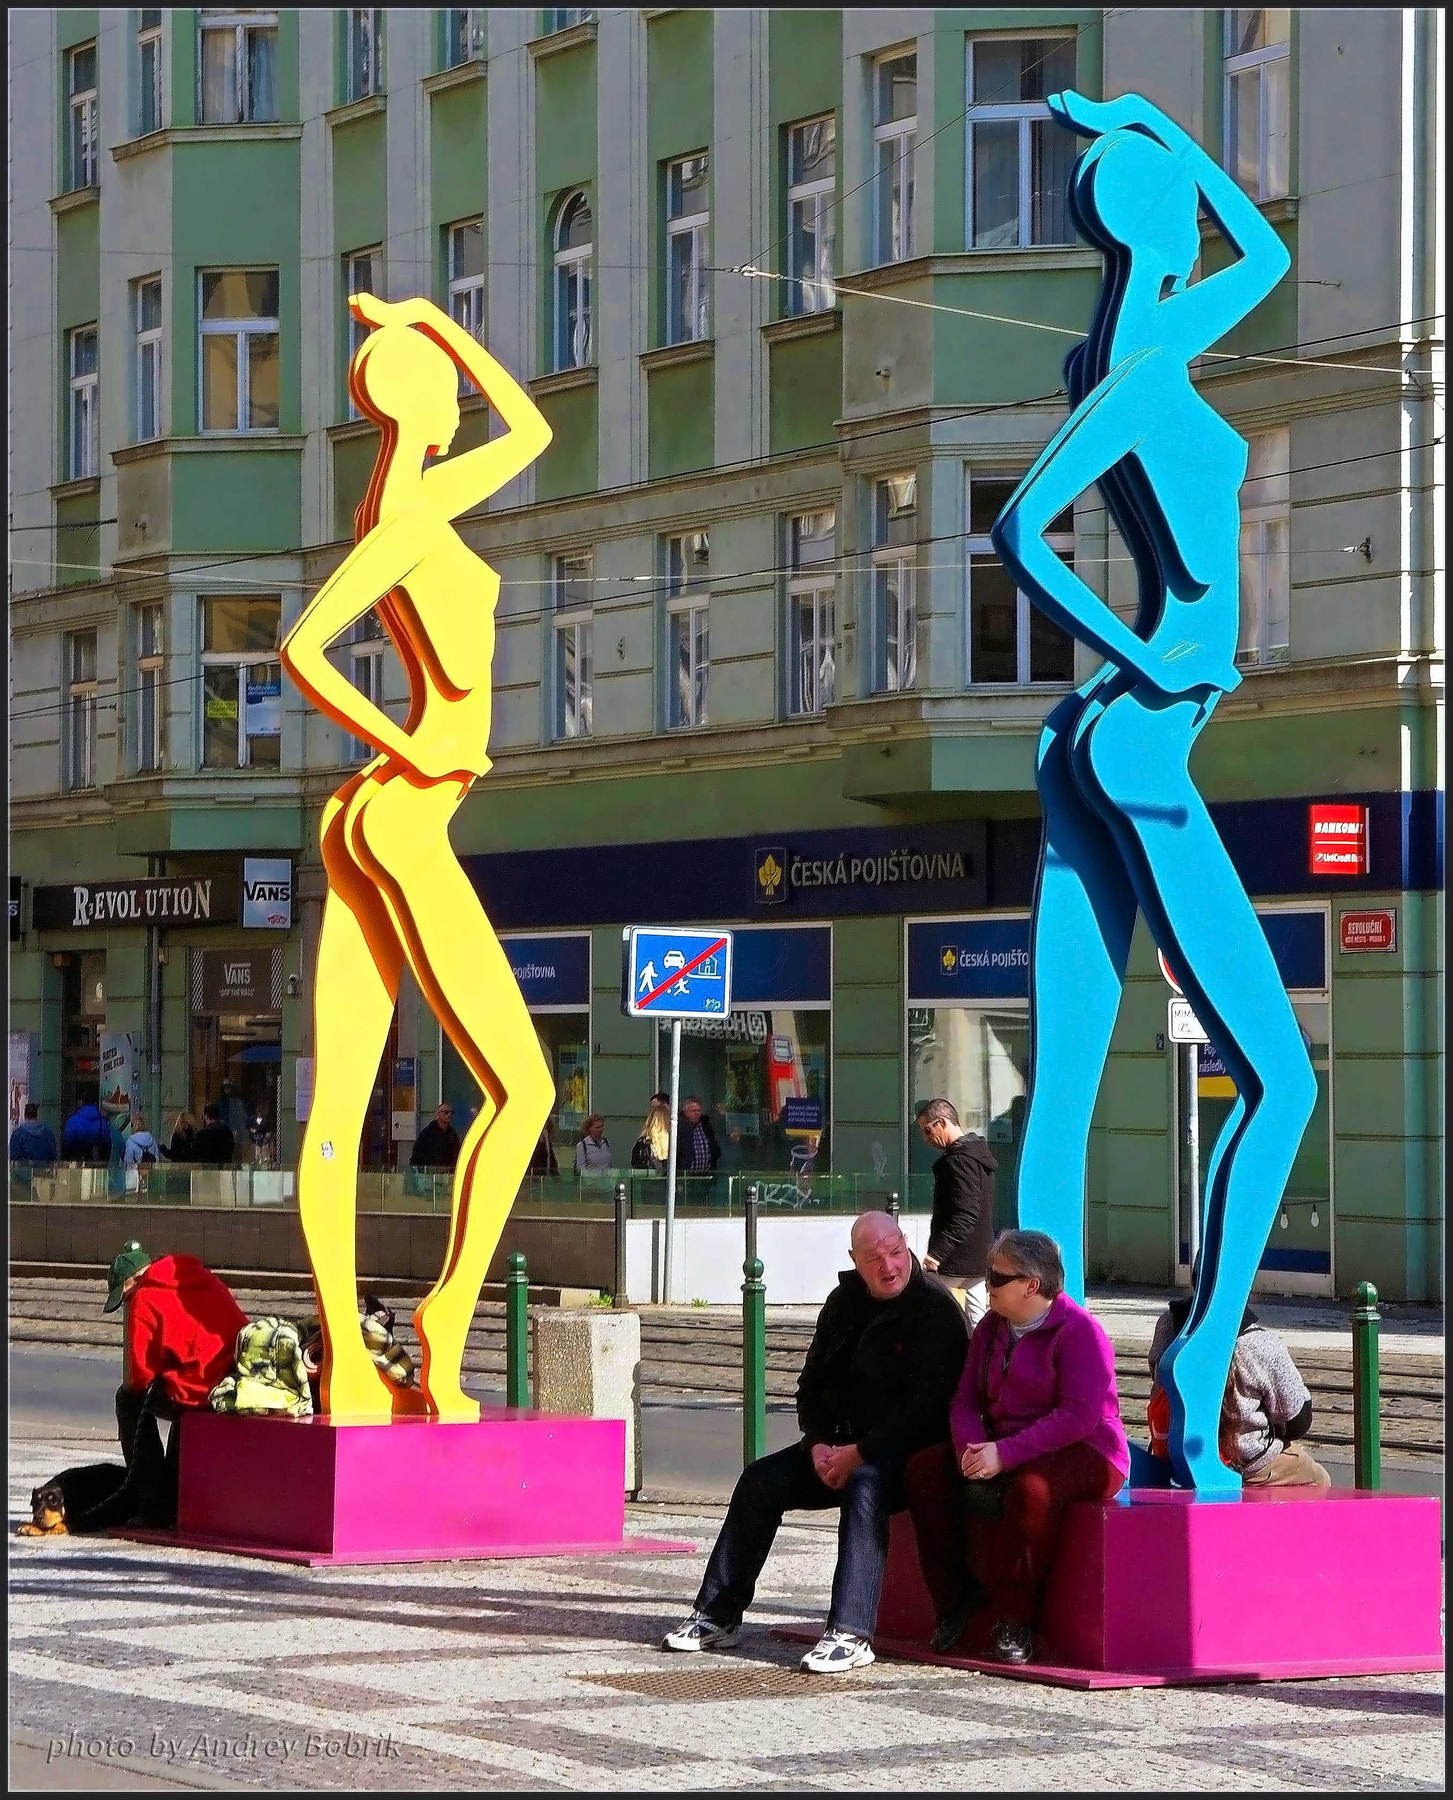 Посиделки Чехия Прага площадь Республики люди фигуры цвет